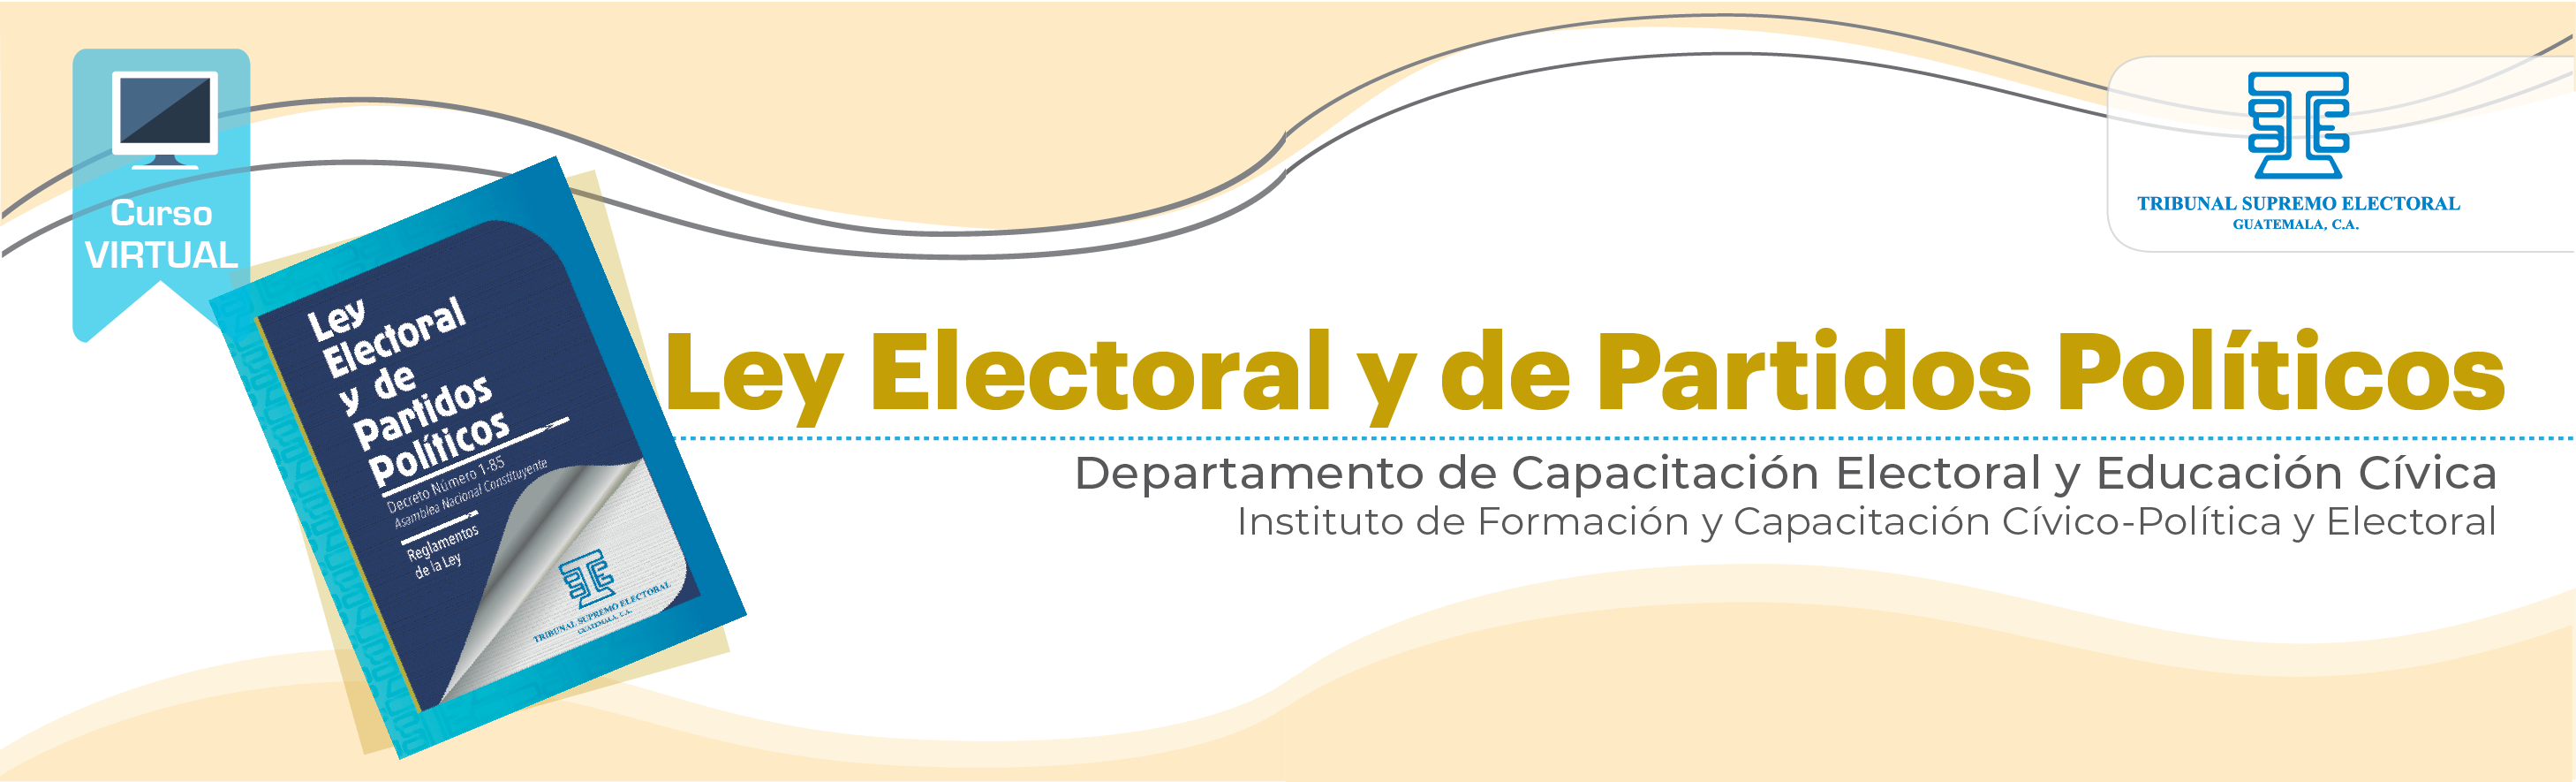 Ley Electoral y de Partidos Políticos 22 T